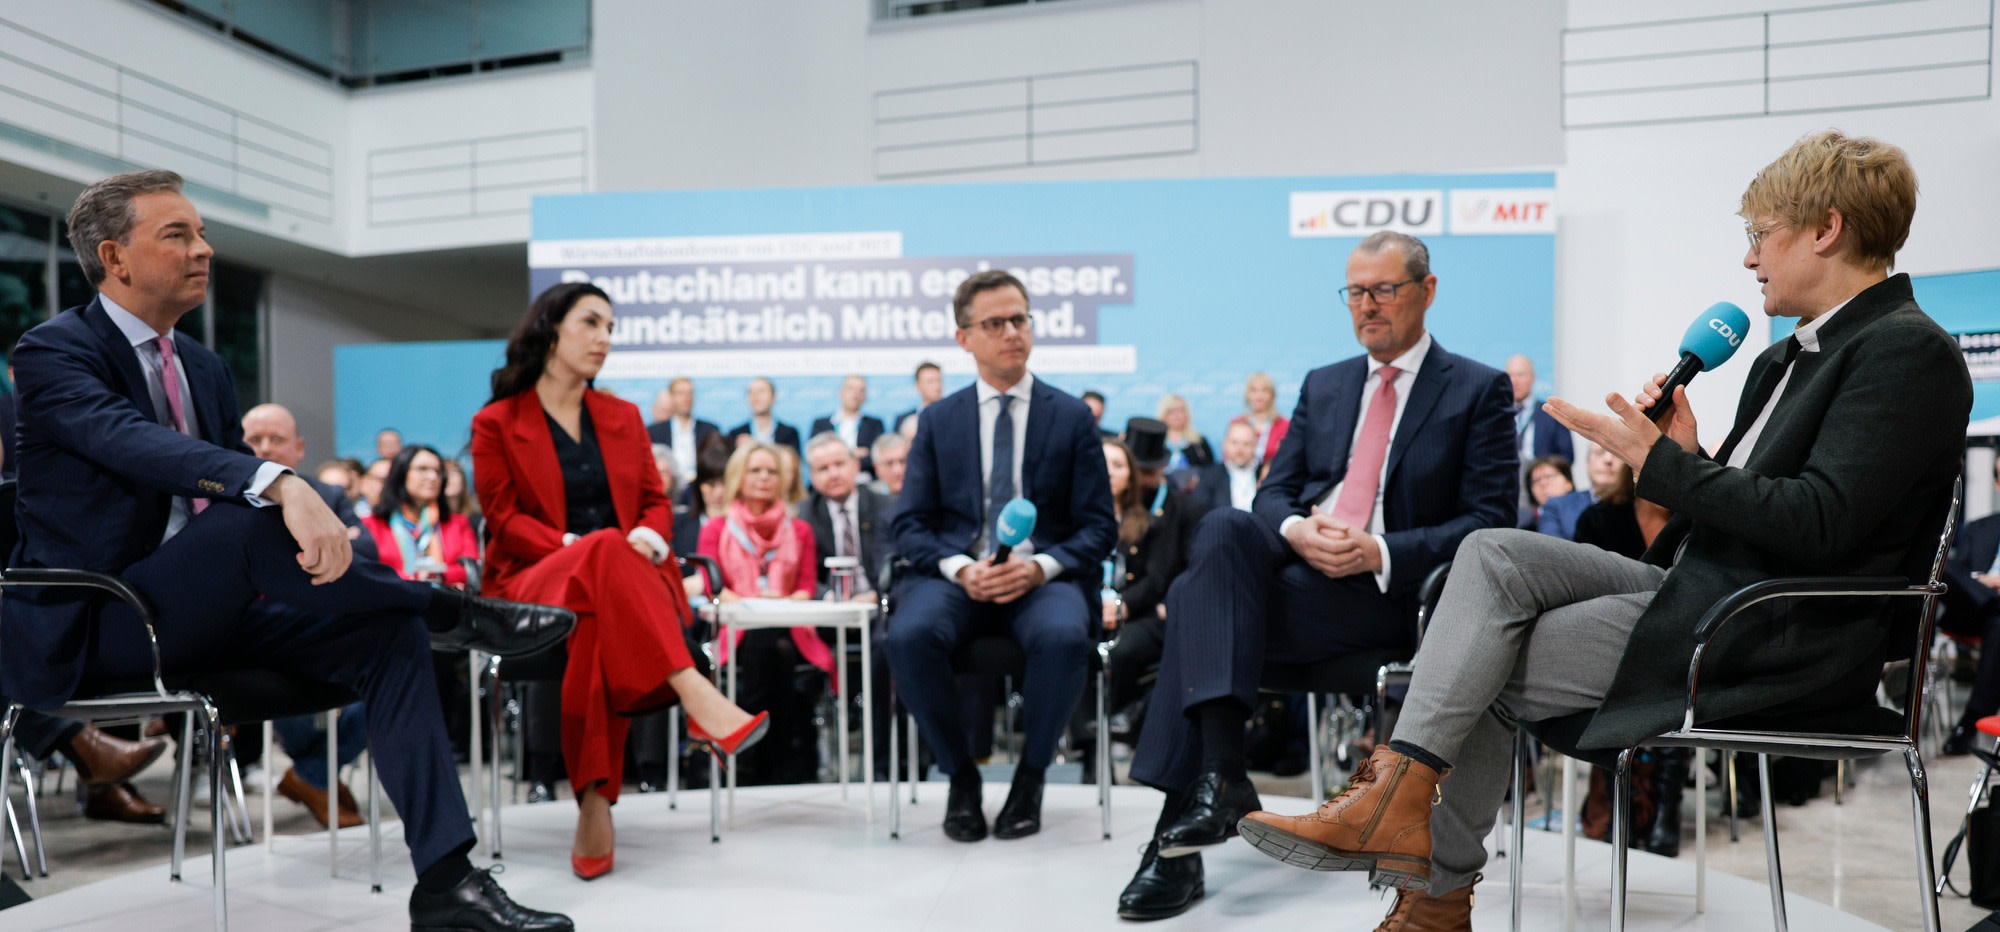 Wirtschaftskonferenz von CDU und MIT